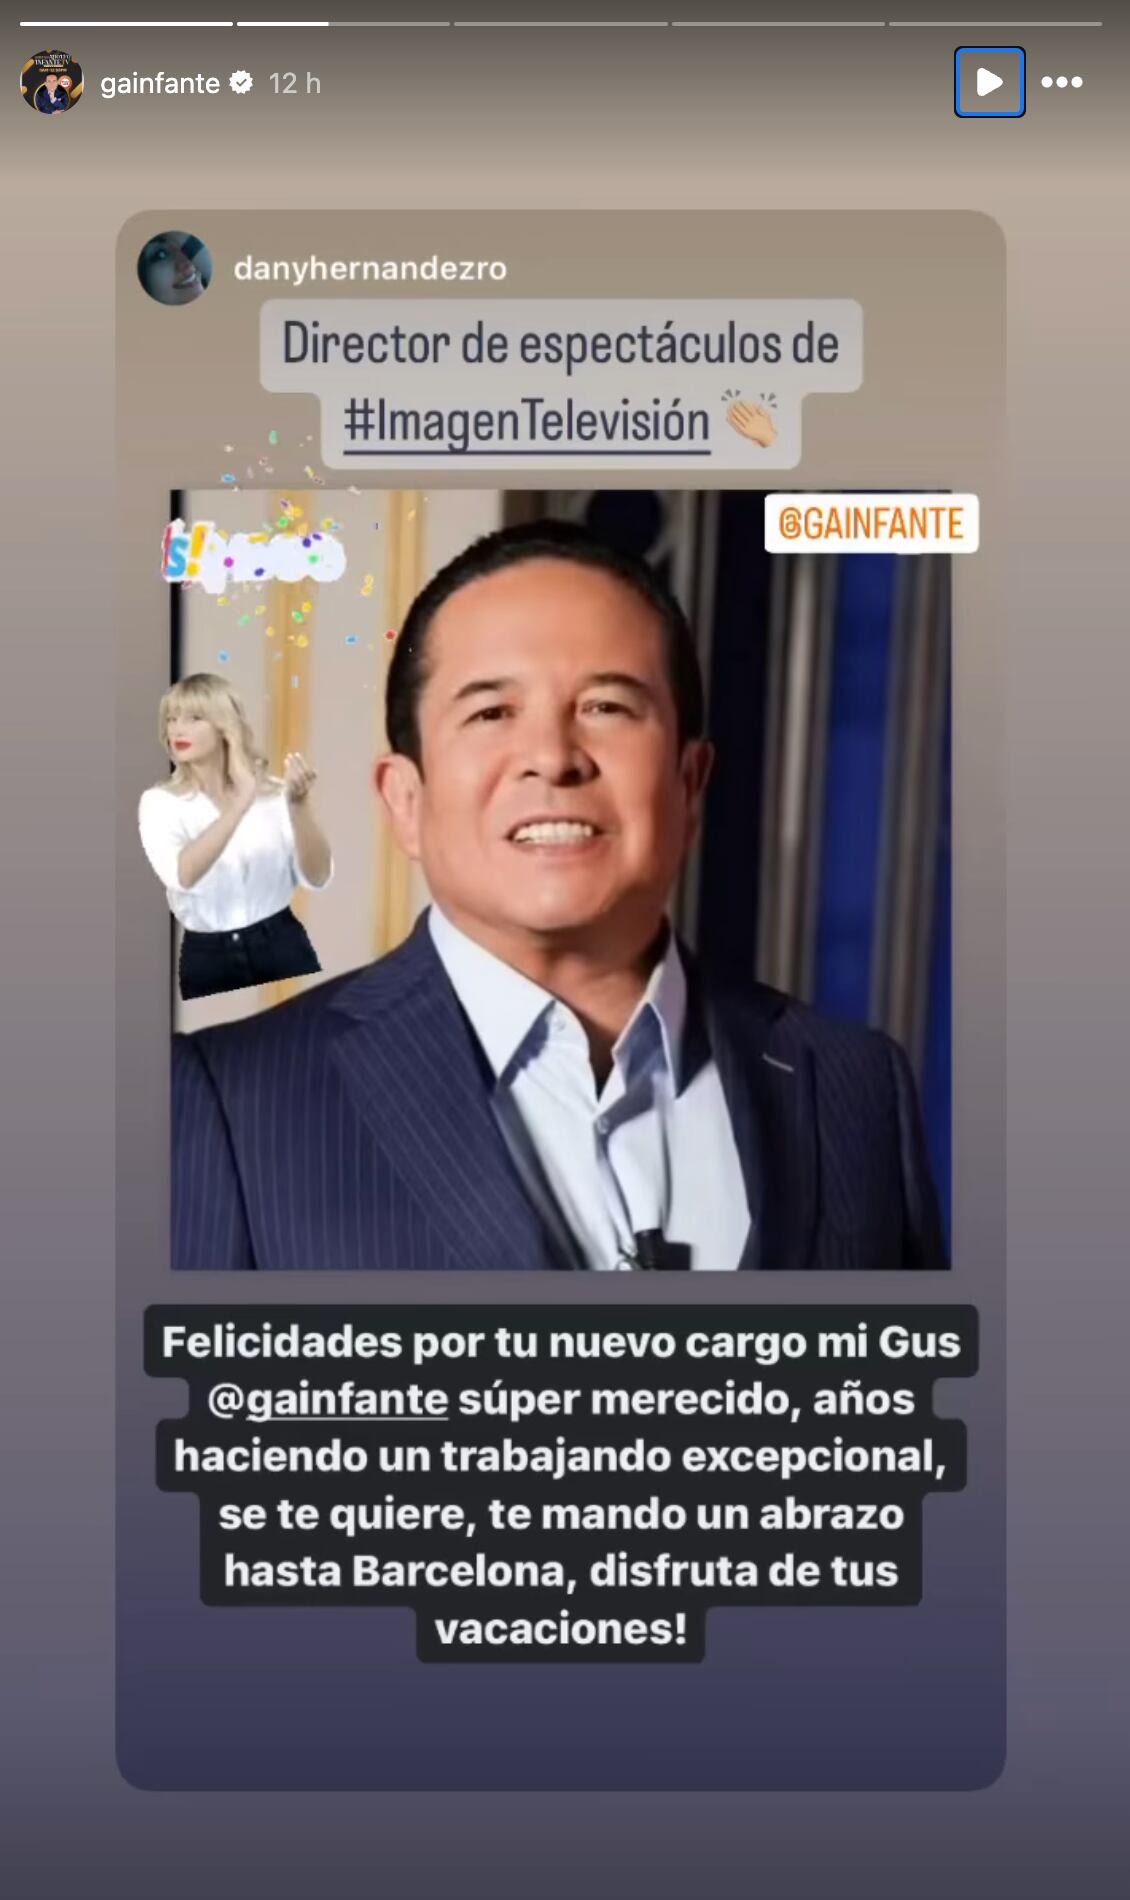 Gustavo Adolfo Infante presume que es el nuevo director de espectáculos de Imagen Televisión